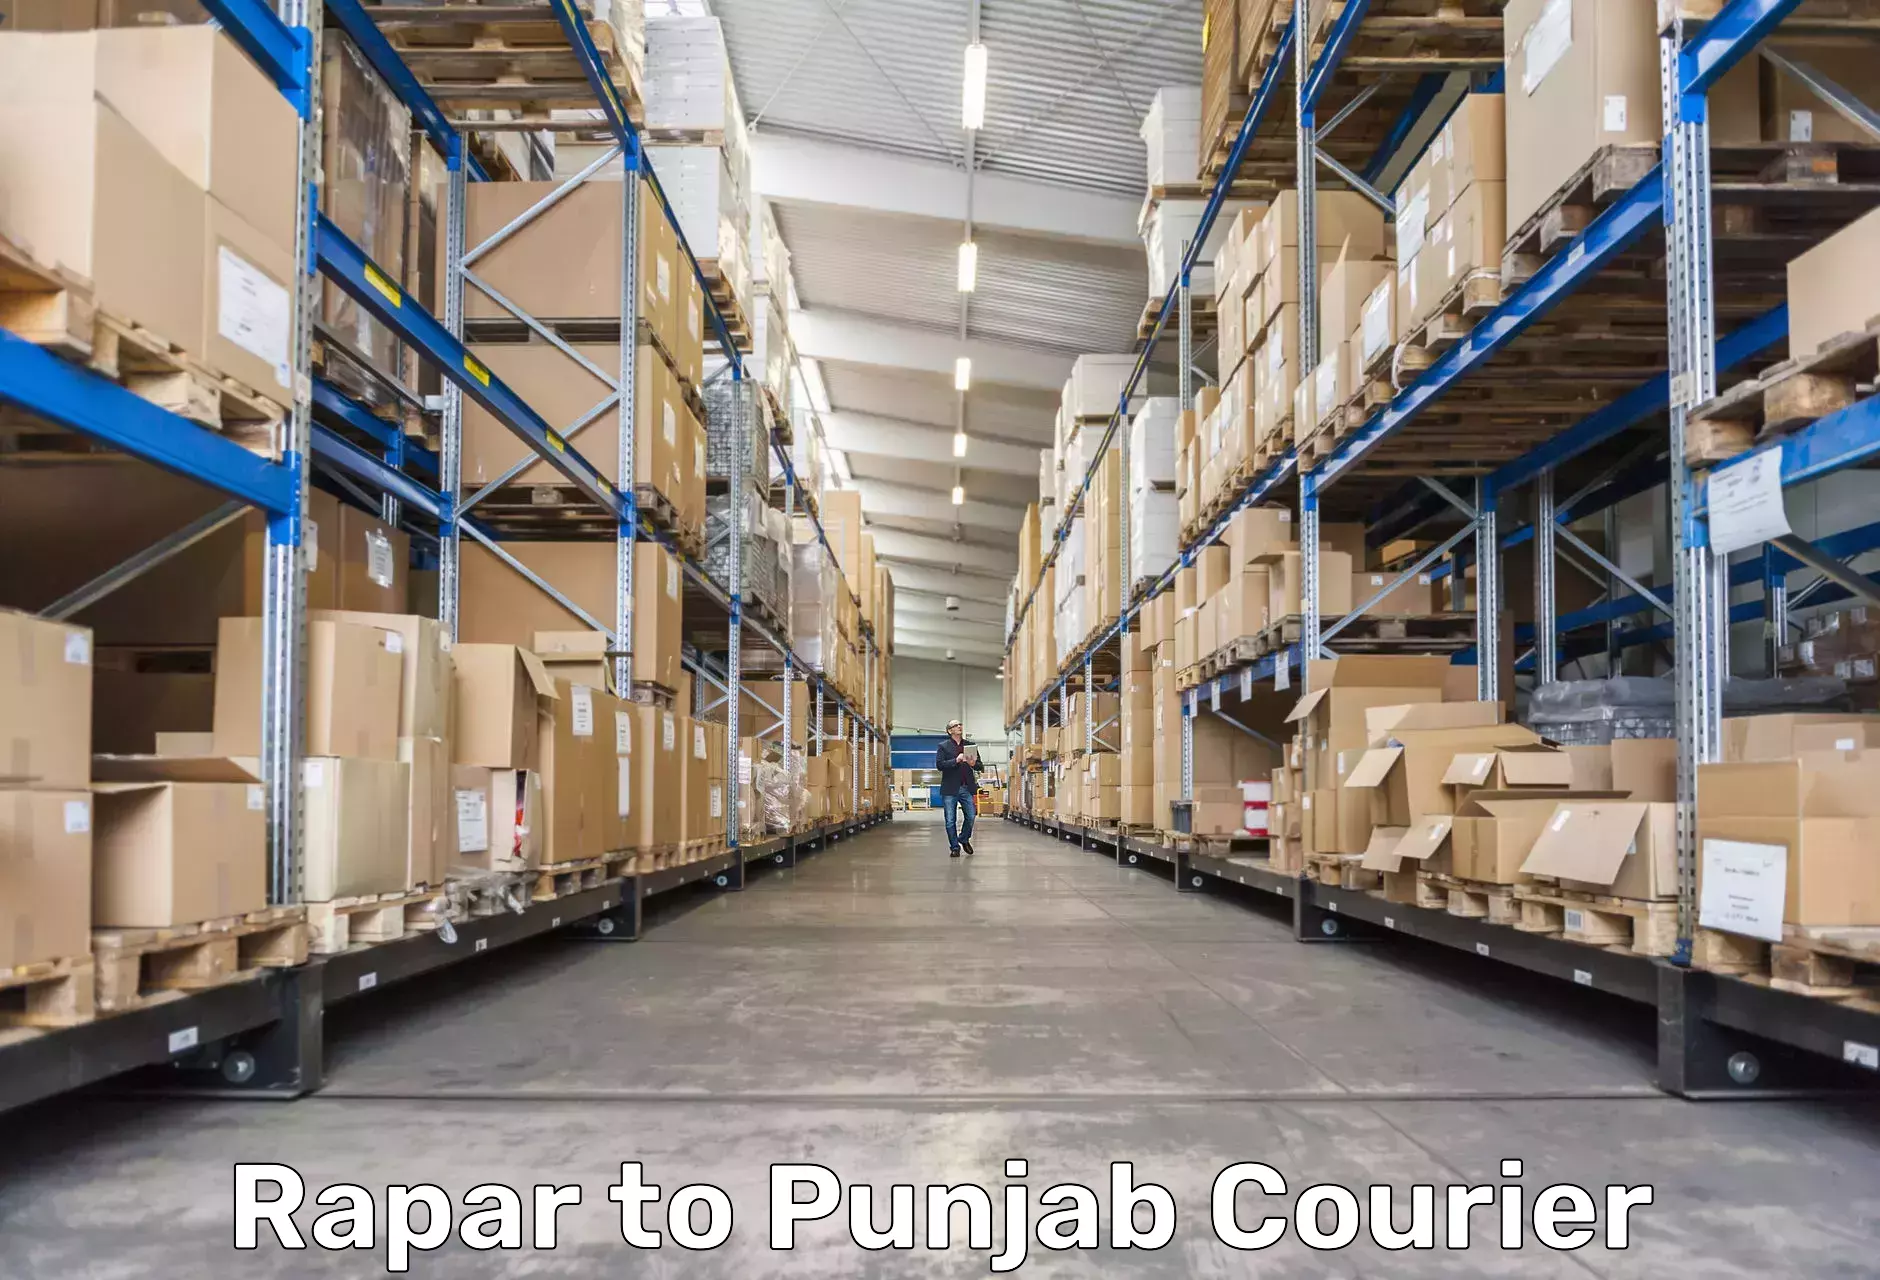 Logistics service provider Rapar to Ludhiana